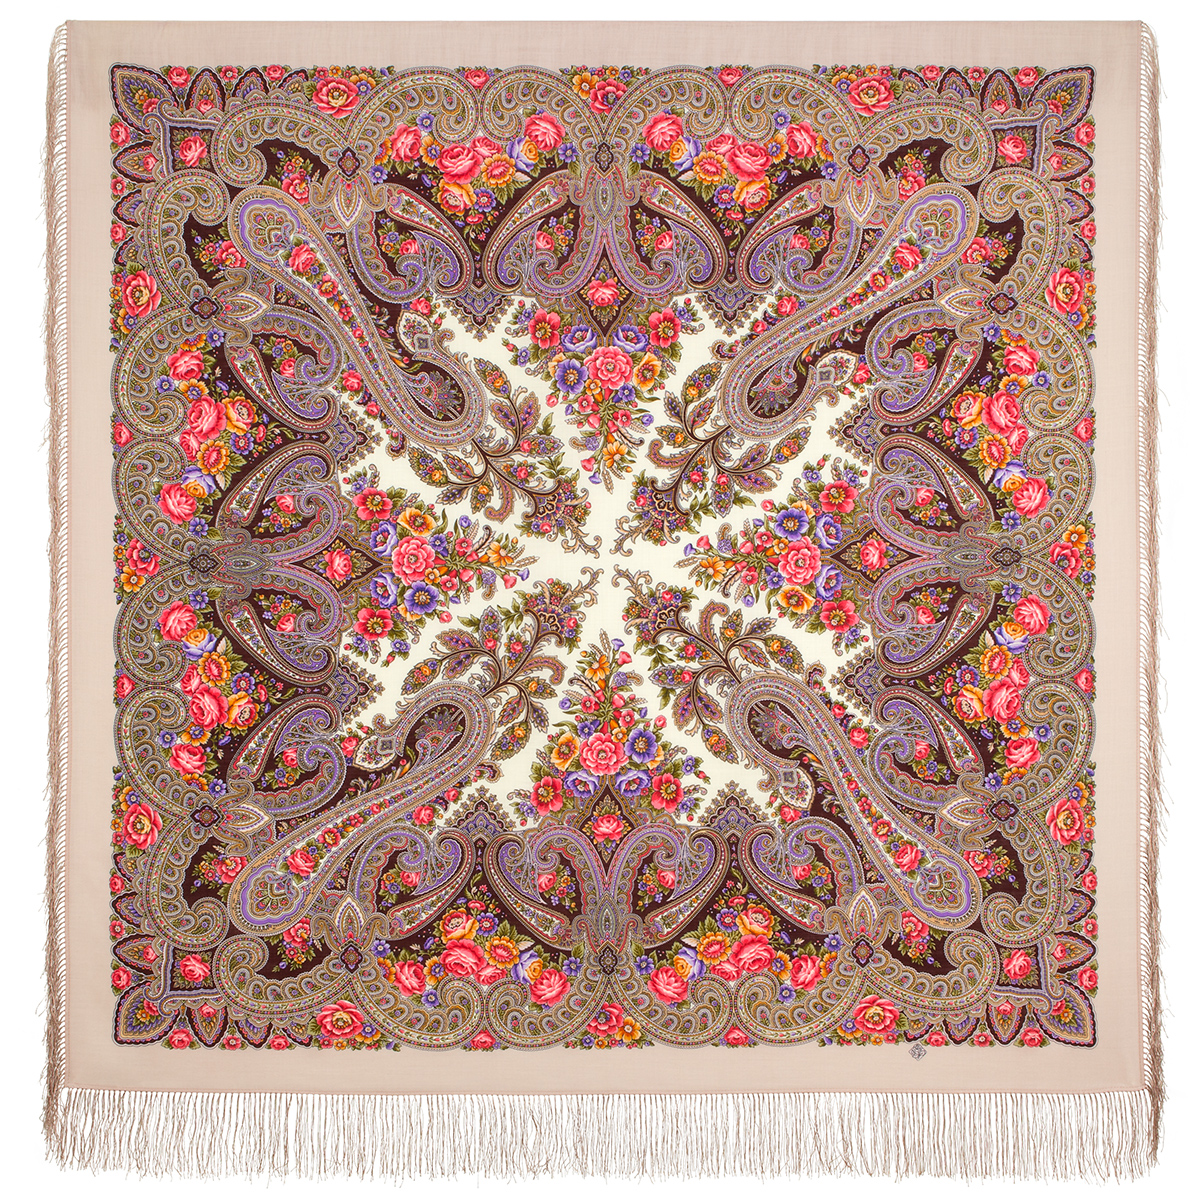 Платок женский Павловопосадский платок 1978 бежевый/коричневый 146x146 см